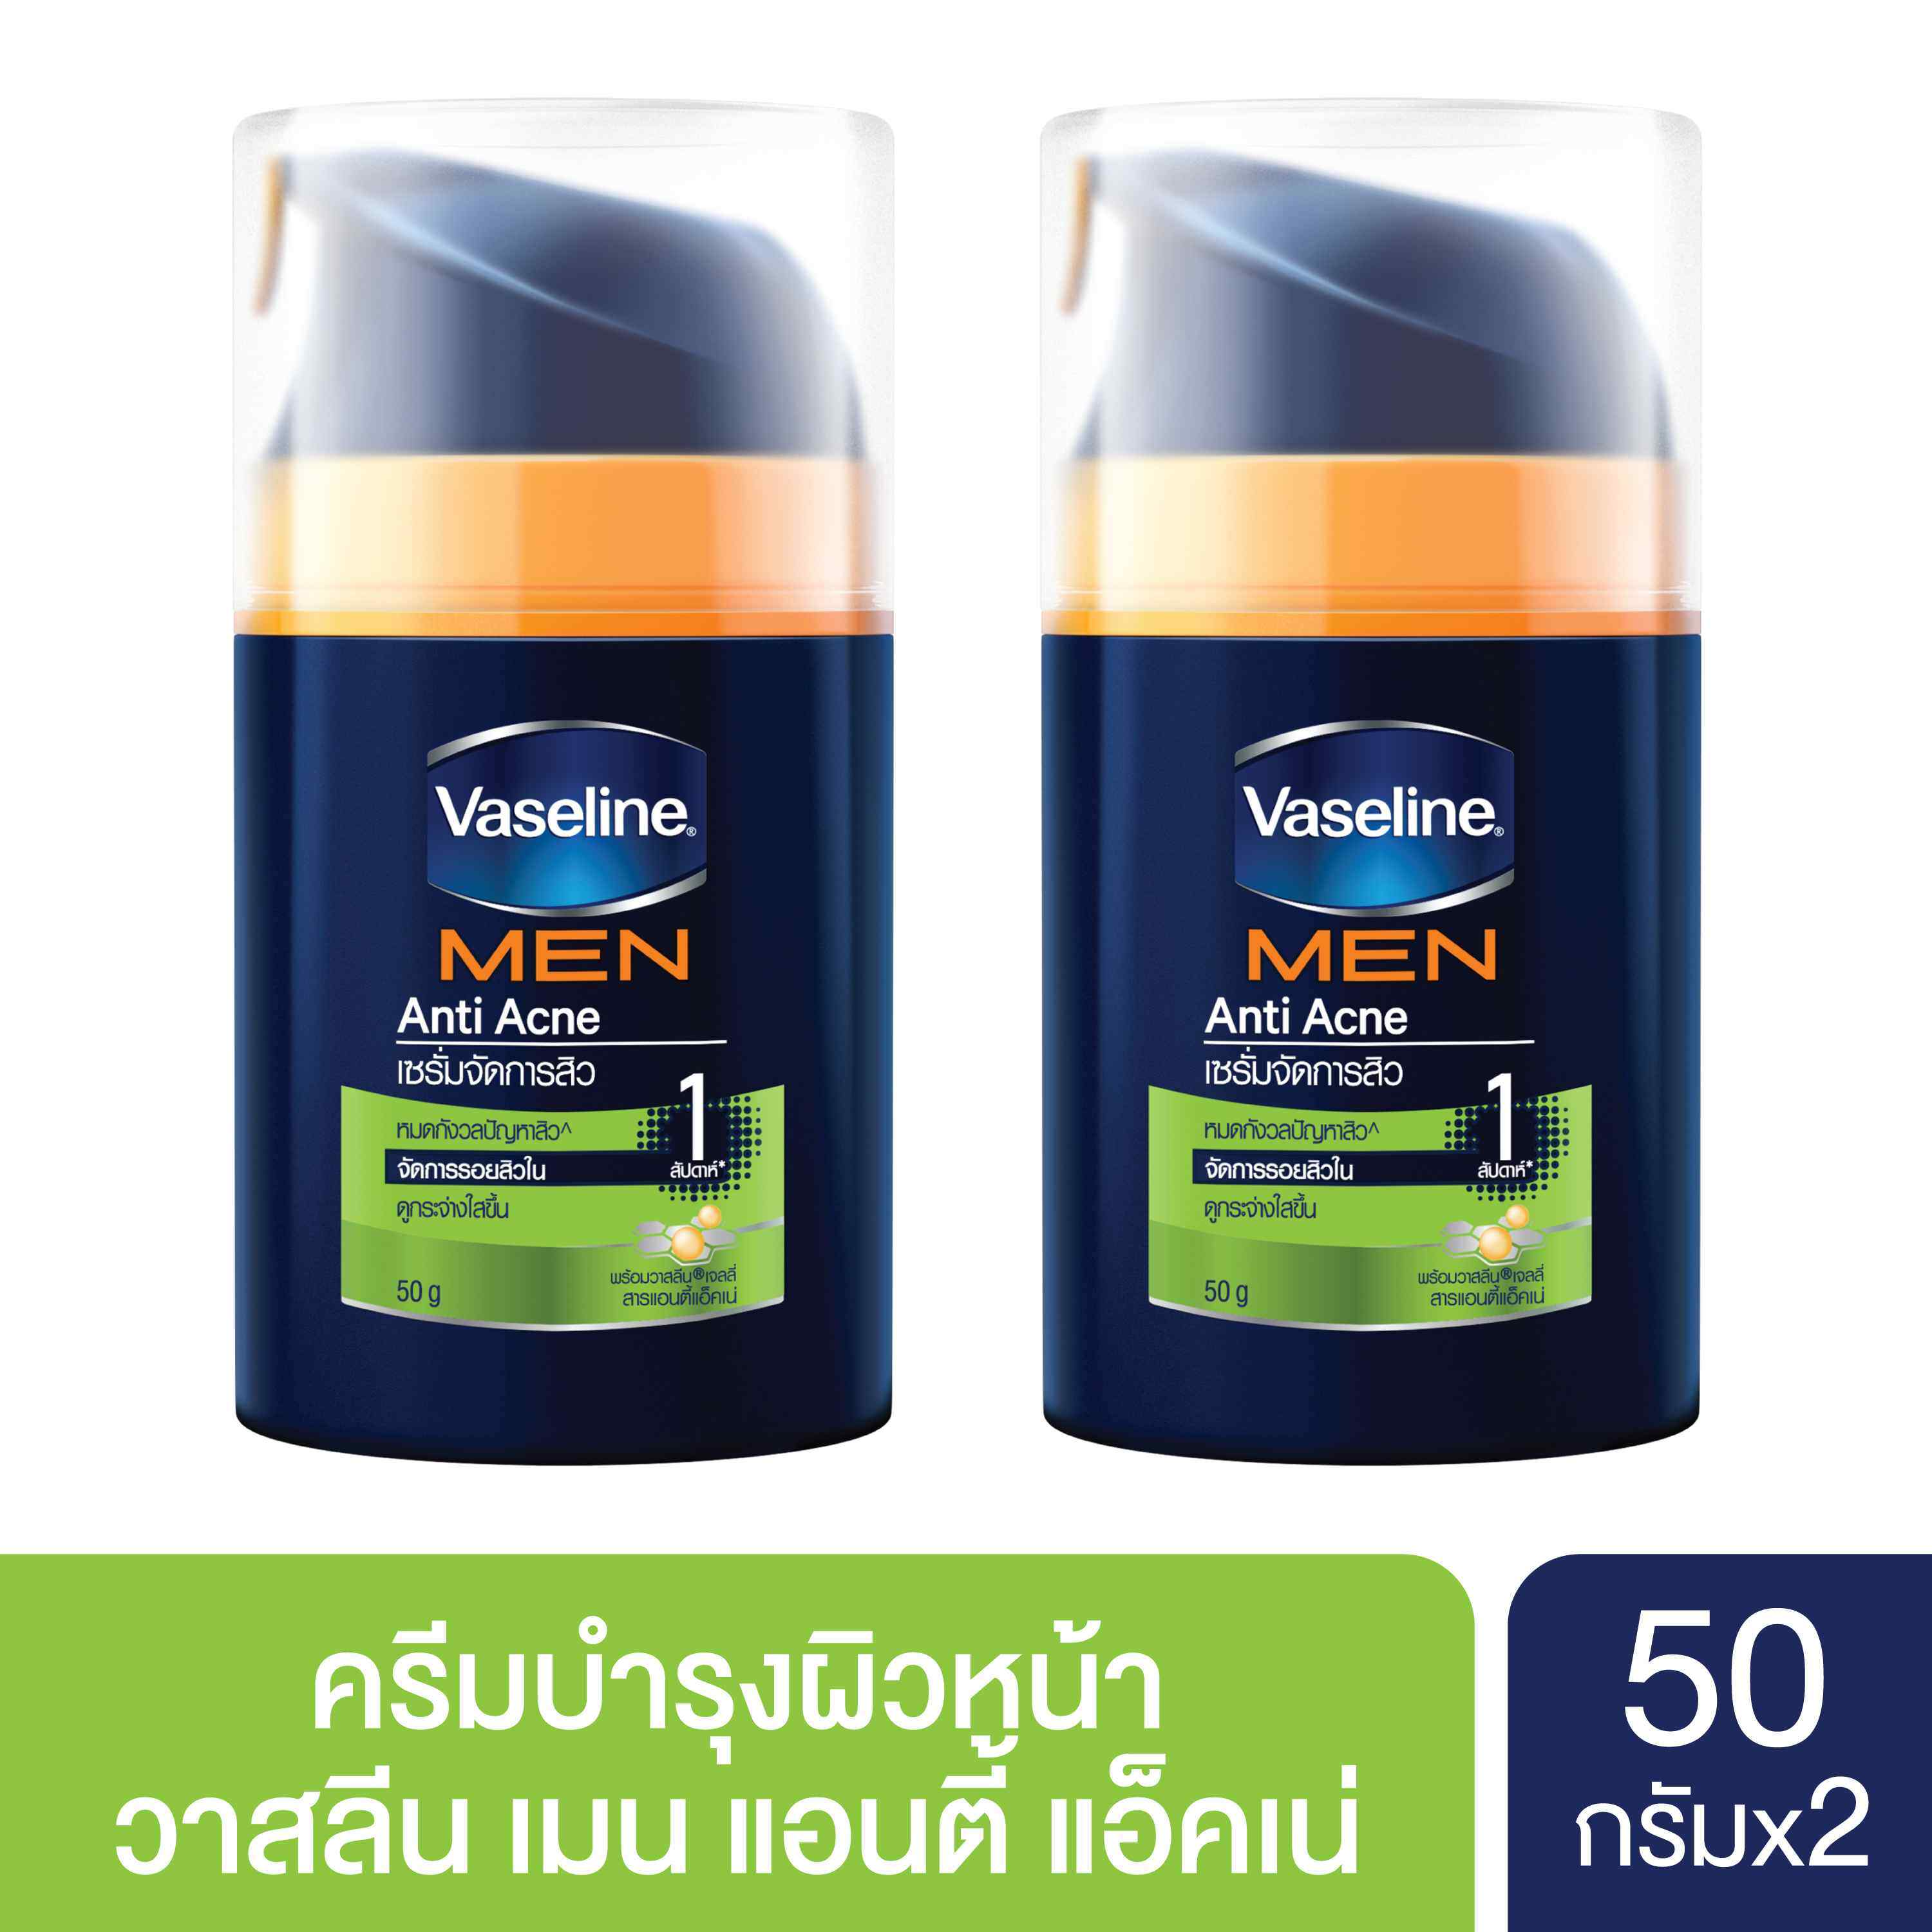 [ส่งฟรี] Vaseline Men Anti-Acne Face Moisturizer 50 G วาสลีนเมน แอนตี้ แอ็คเน่ เฟซมอยซ์ 50 กรัม (2 ชิ้น)